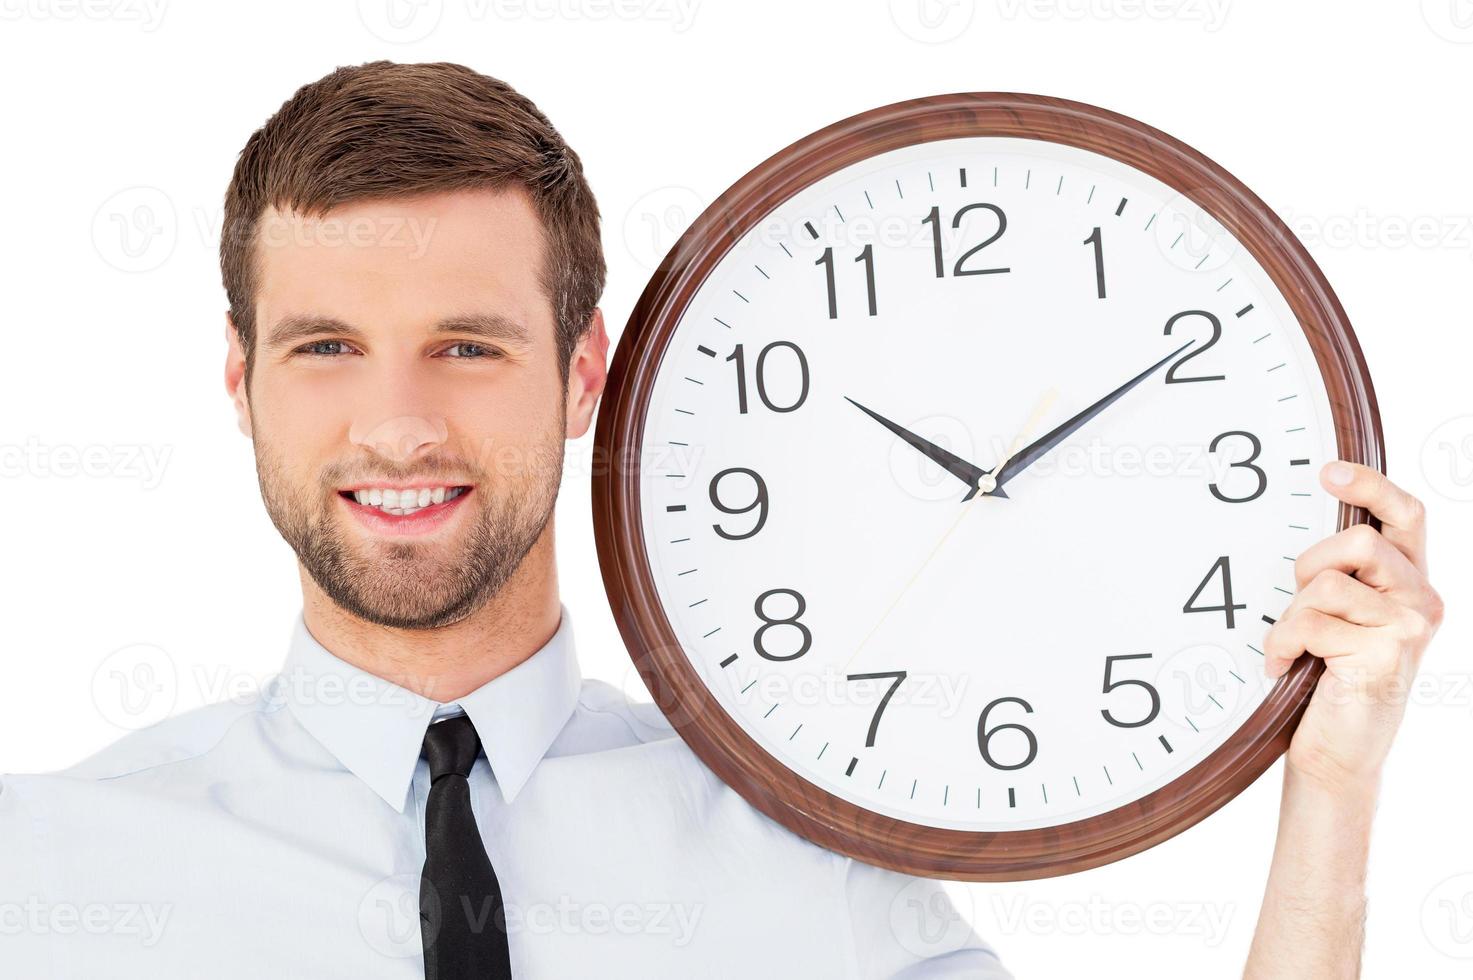 prenez votre temps beau jeune homme en tenues de soirée tenant une horloge sur son épaule et souriant debout isolé sur fond blanc photo